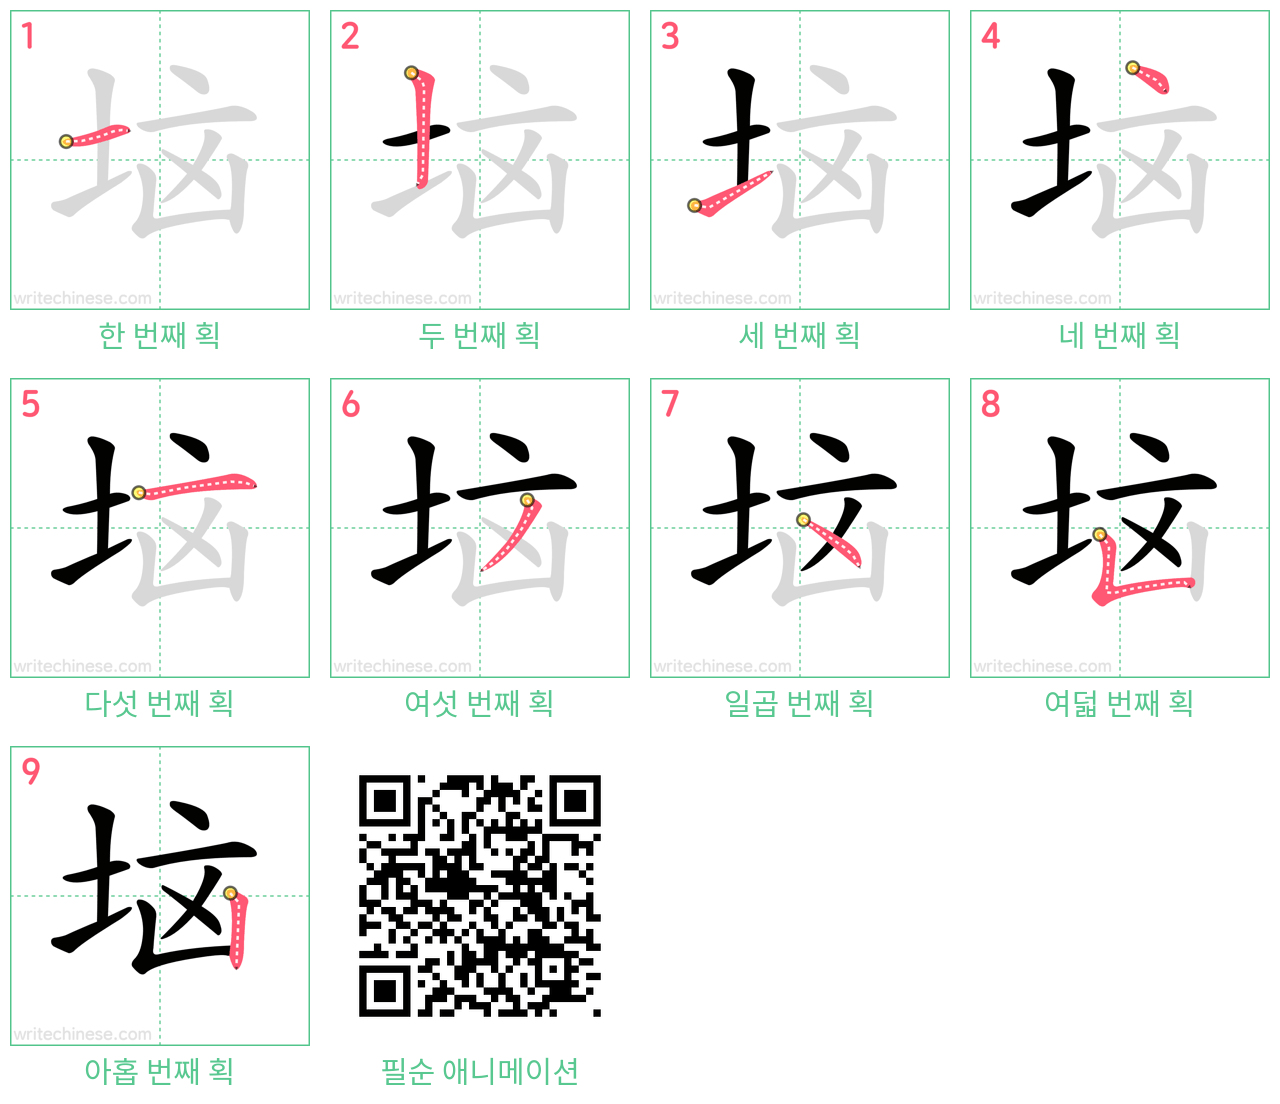 垴 step-by-step stroke order diagrams